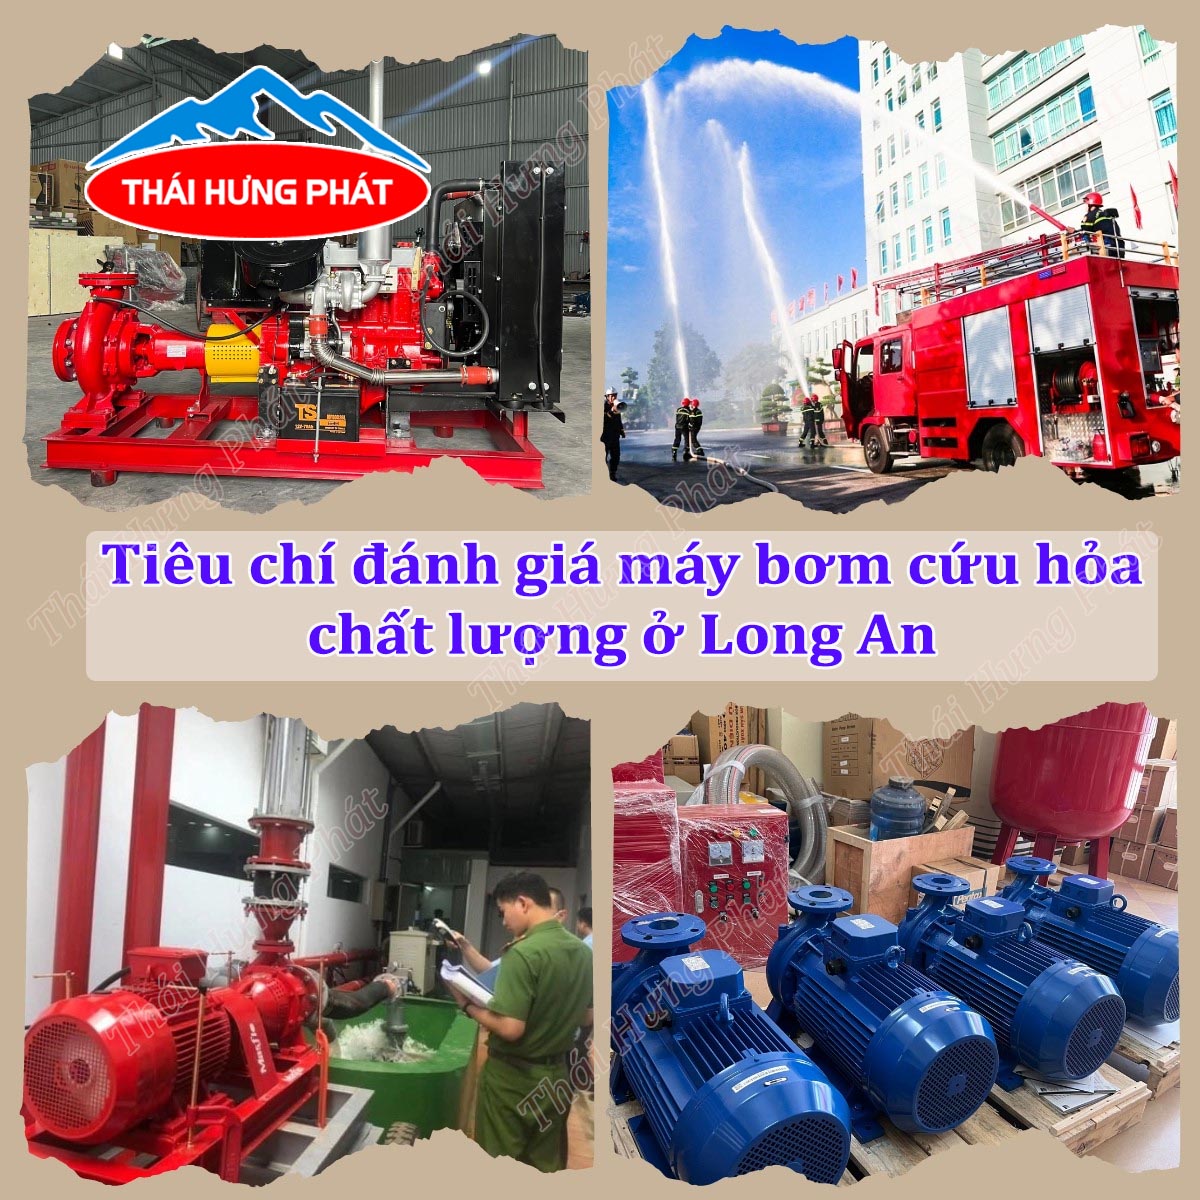 Đơn vị bán máy bơm chữa cháy chất lượng tại tỉnh Long An